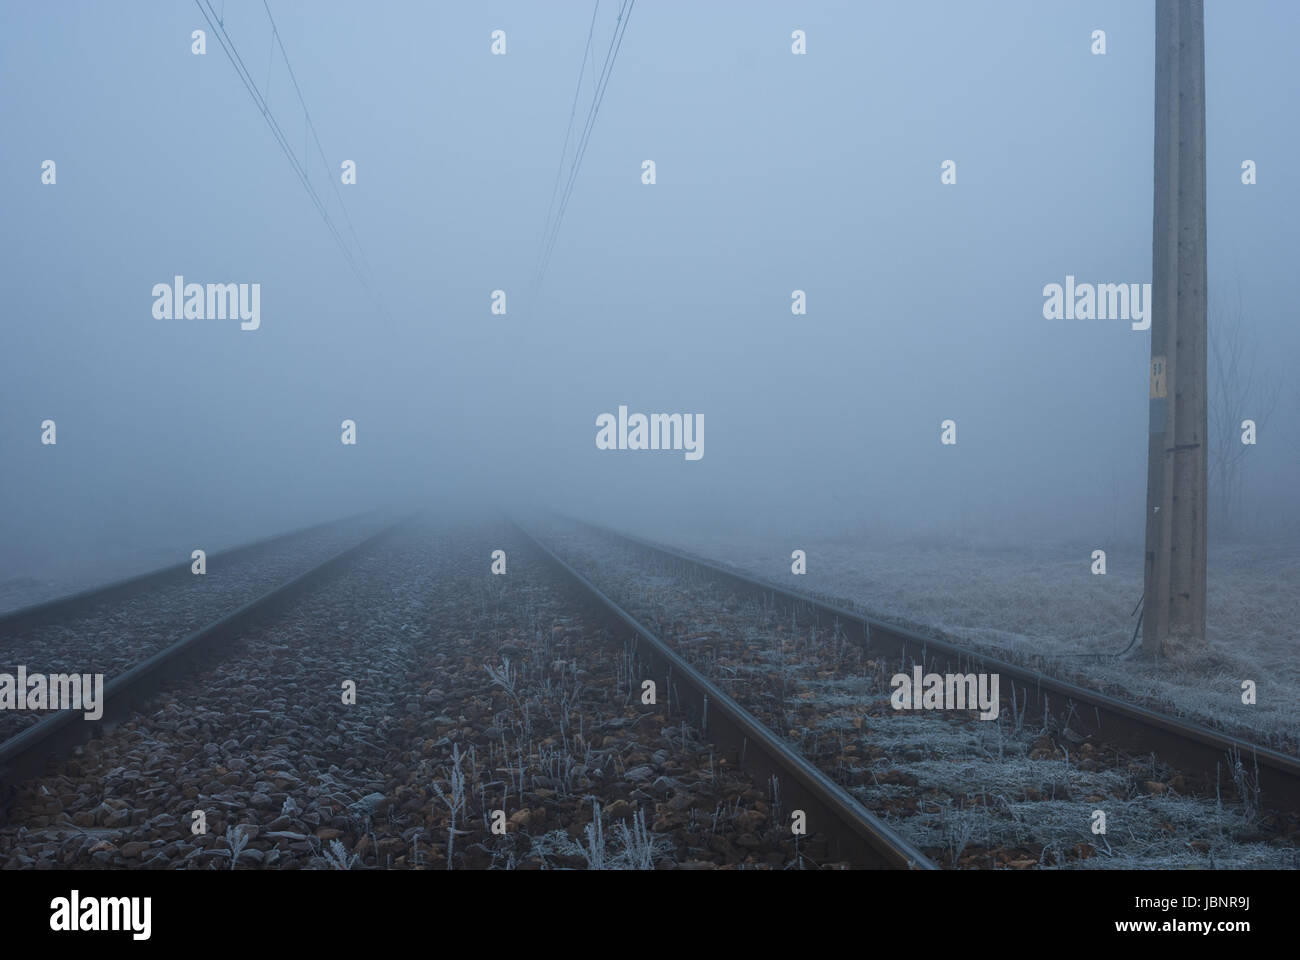 Las vías de ferrocarril en la niebla Foto de stock